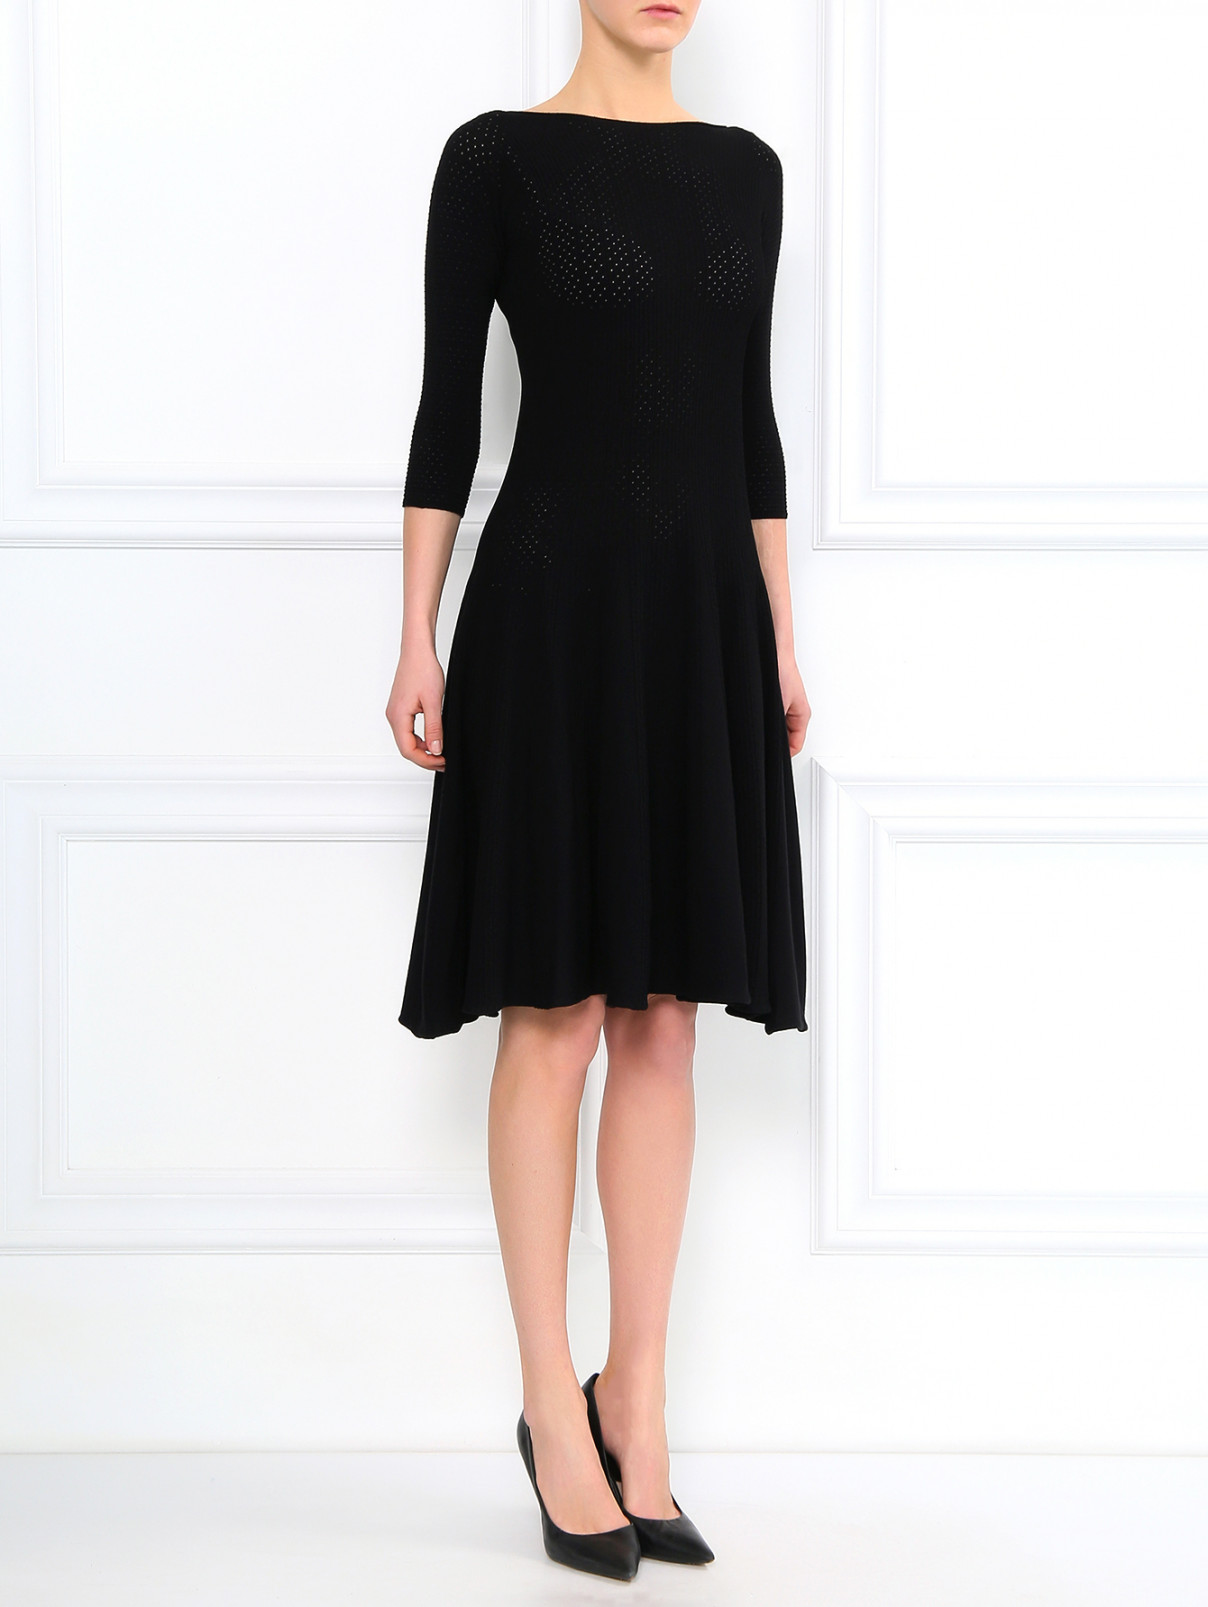 Трикотажное платье-миди с коротким рукавом Emporio Armani  –  Модель Общий вид  – Цвет:  Черный